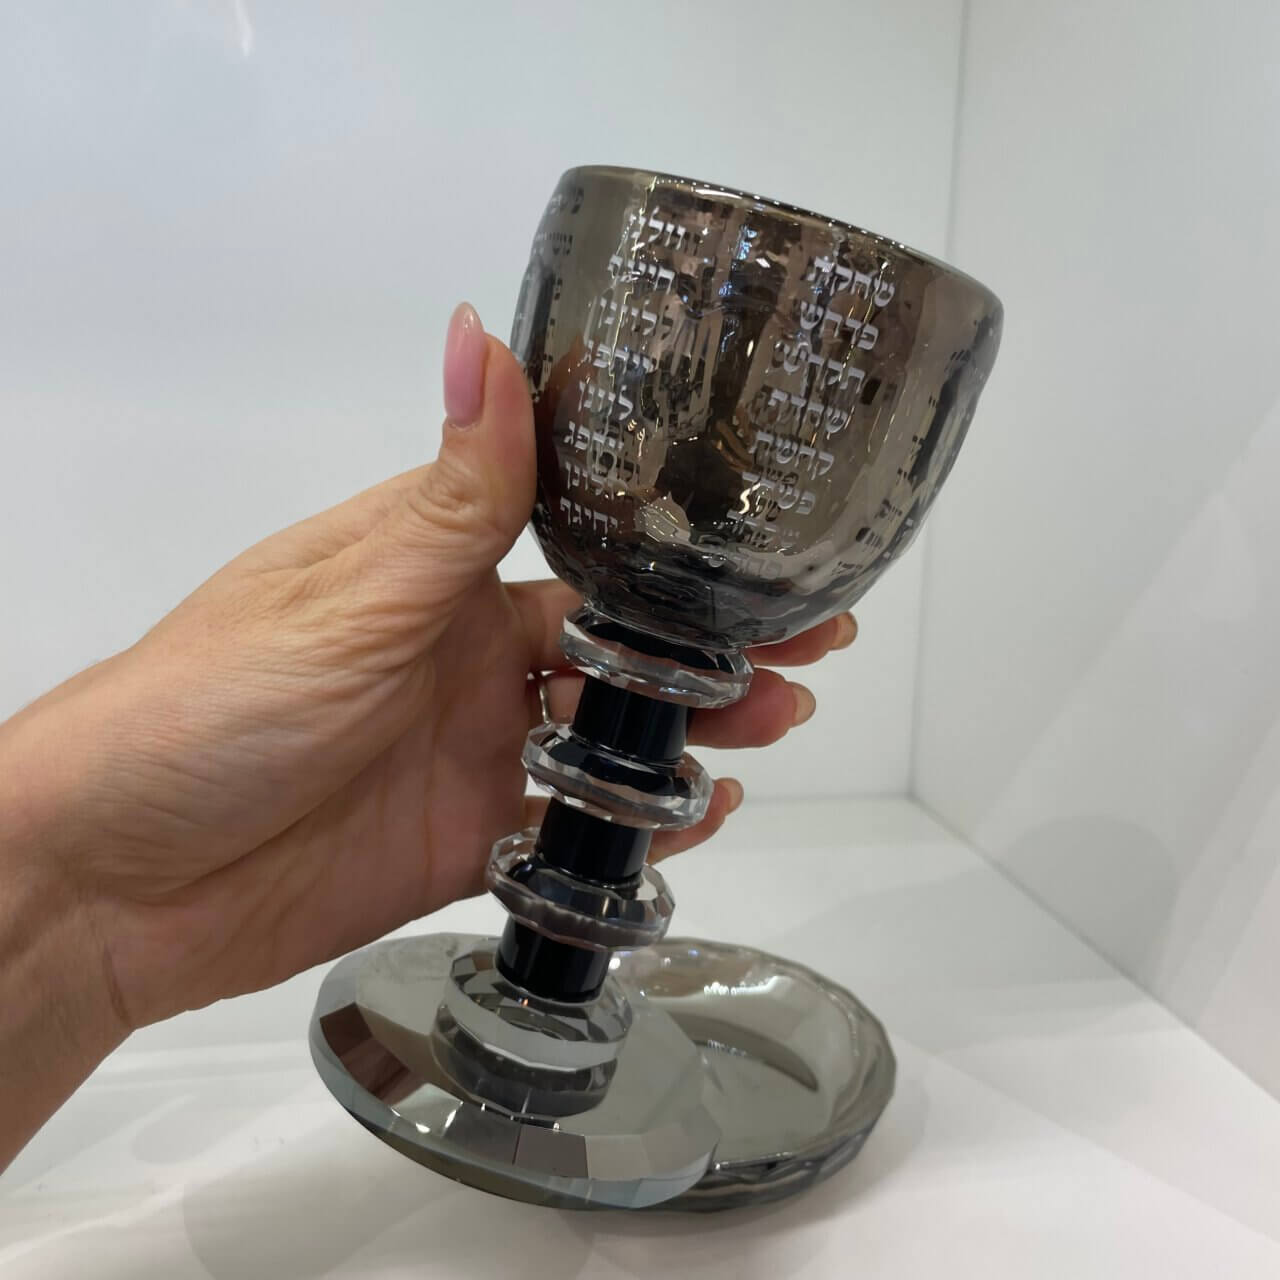 גביע קידוש מושחרת קריסטל ״דגם נהרות״